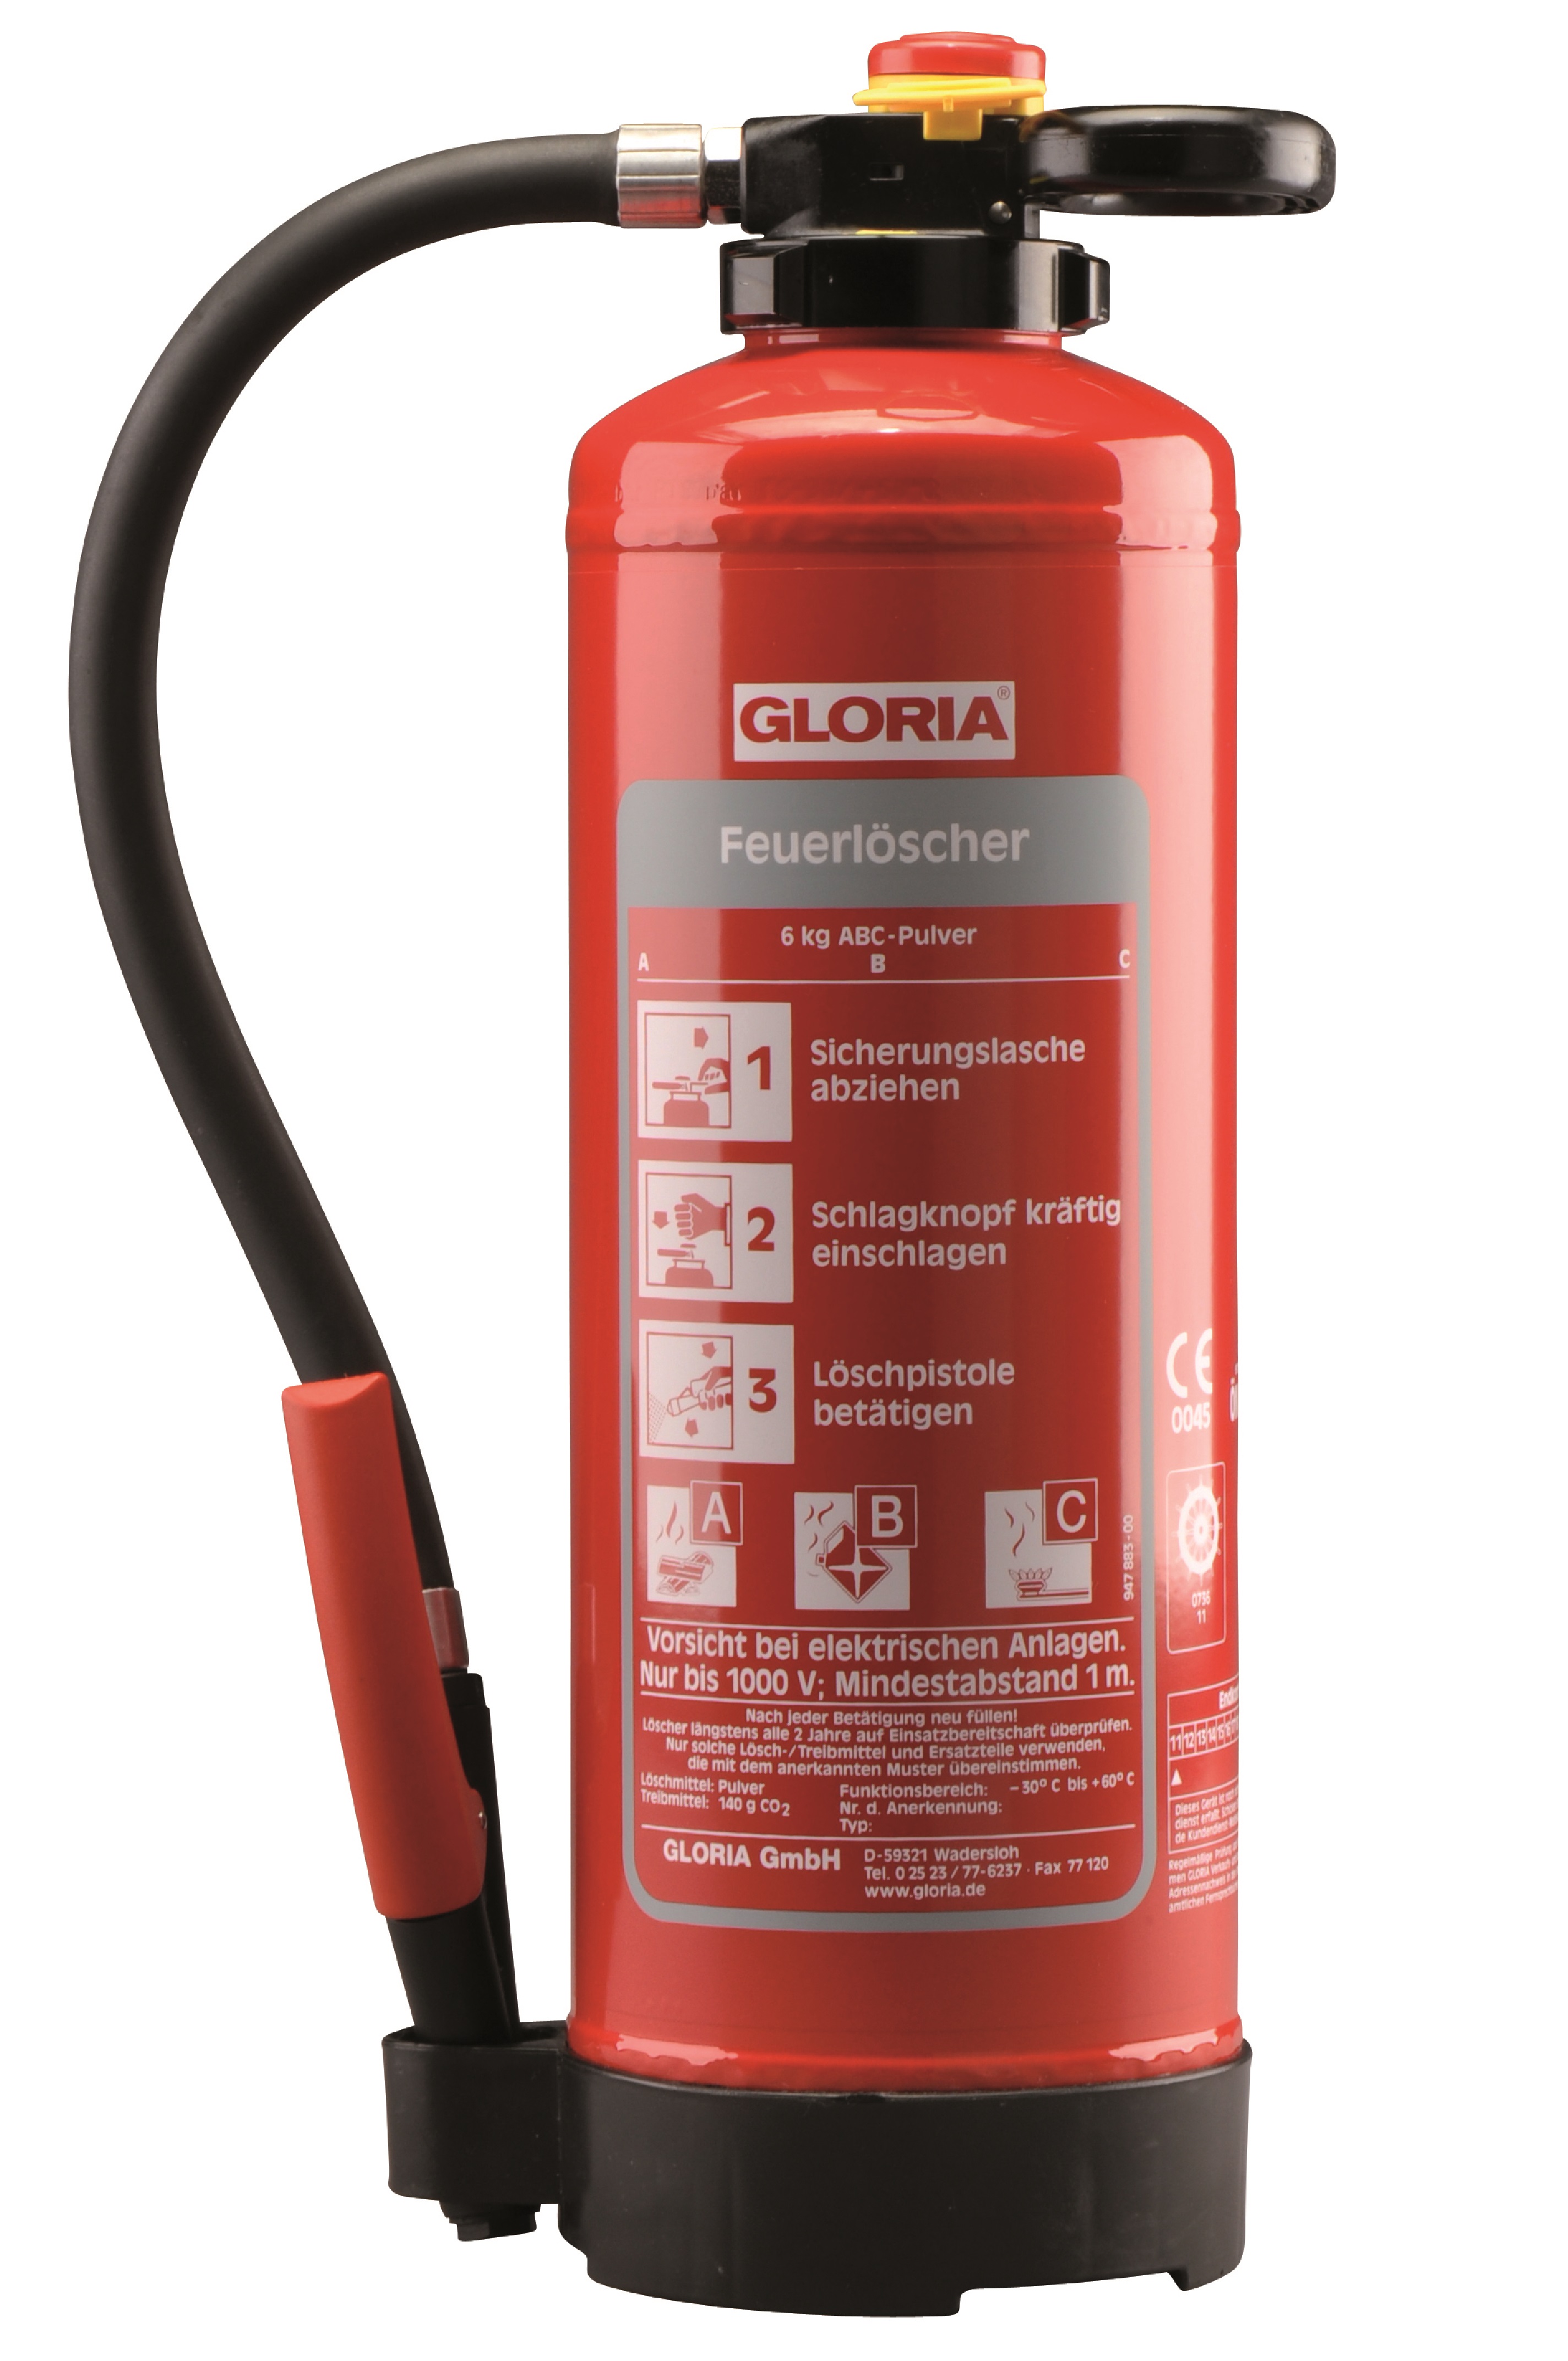 Gloria - PRO-LINE - PH 6 PRO - Pulver-Aufladefeuerlöscher mit Wandhalter -  DIN EN 3, GS, CE, MED